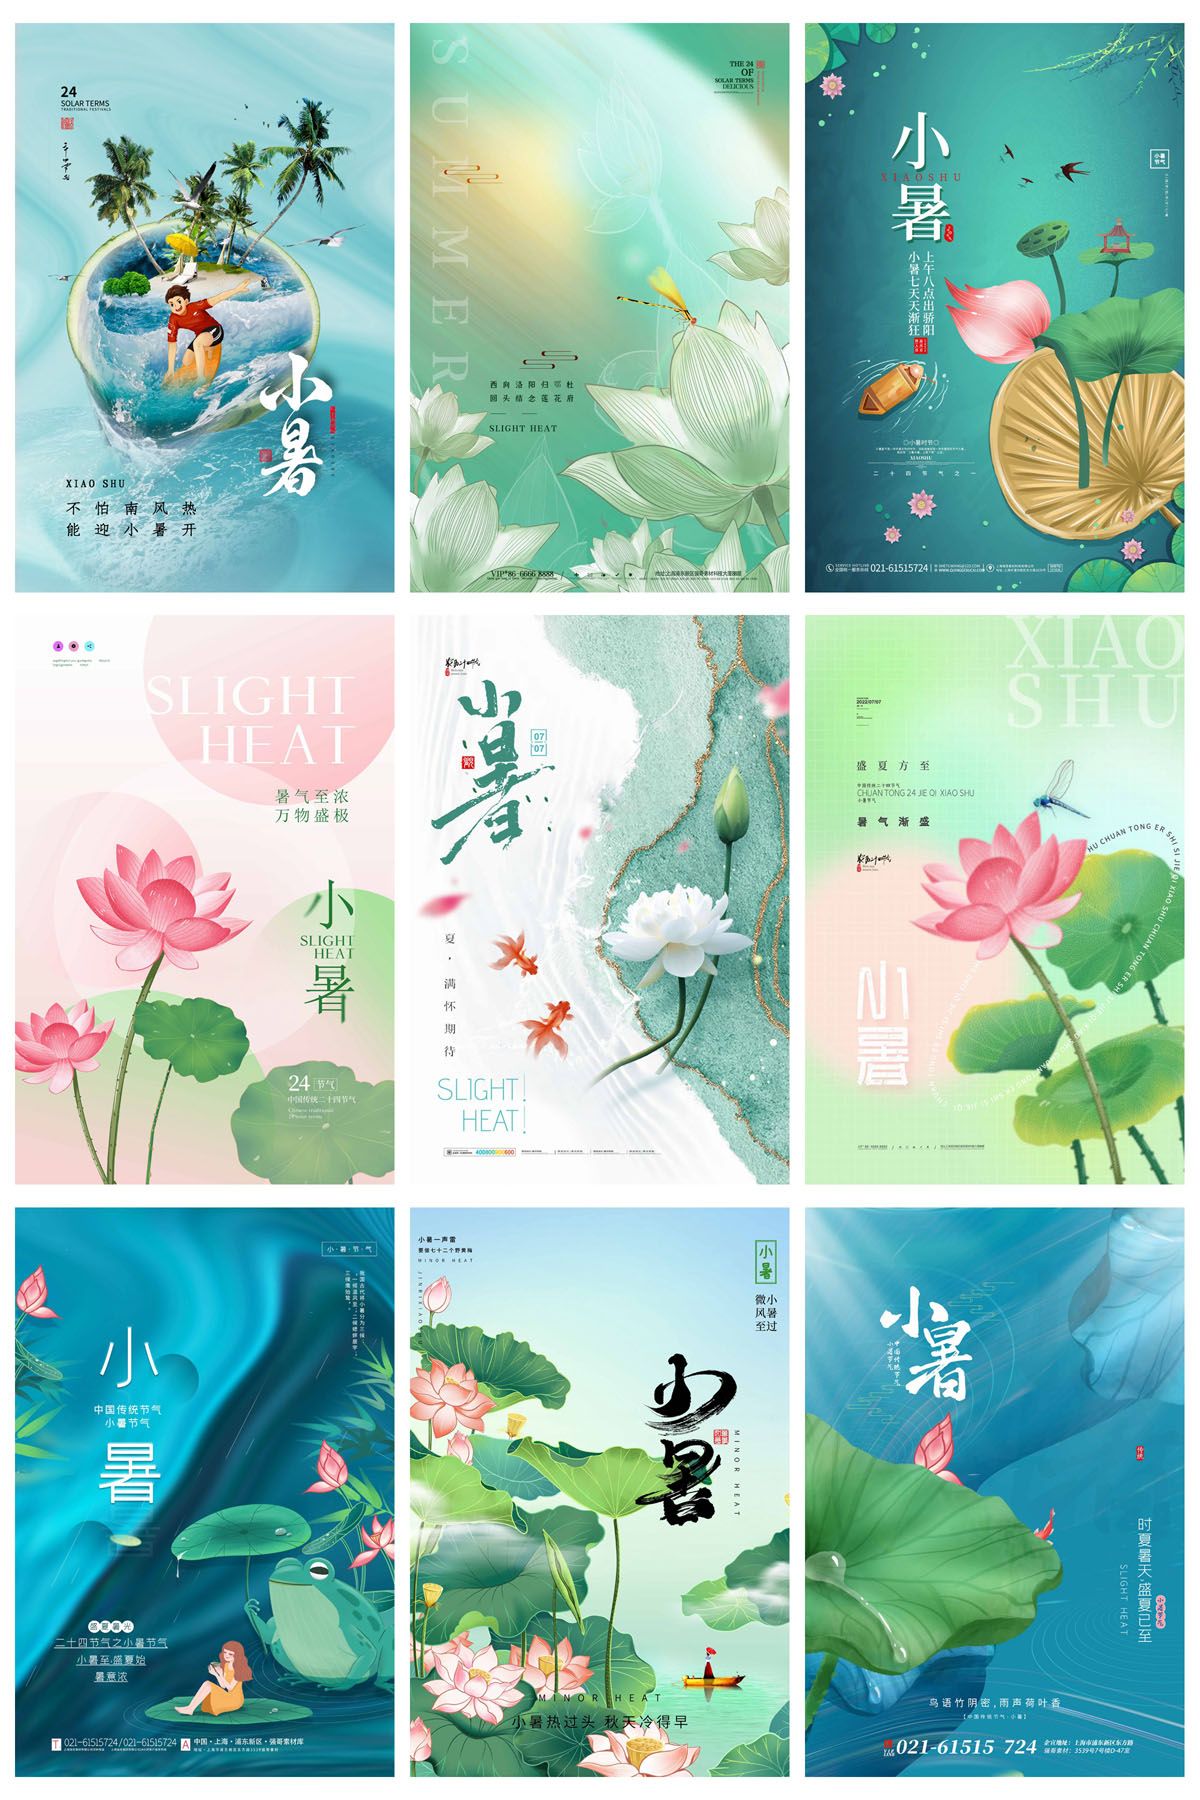 93款中国风24节气小暑宣传海报PSD模板 设计素材 第17张